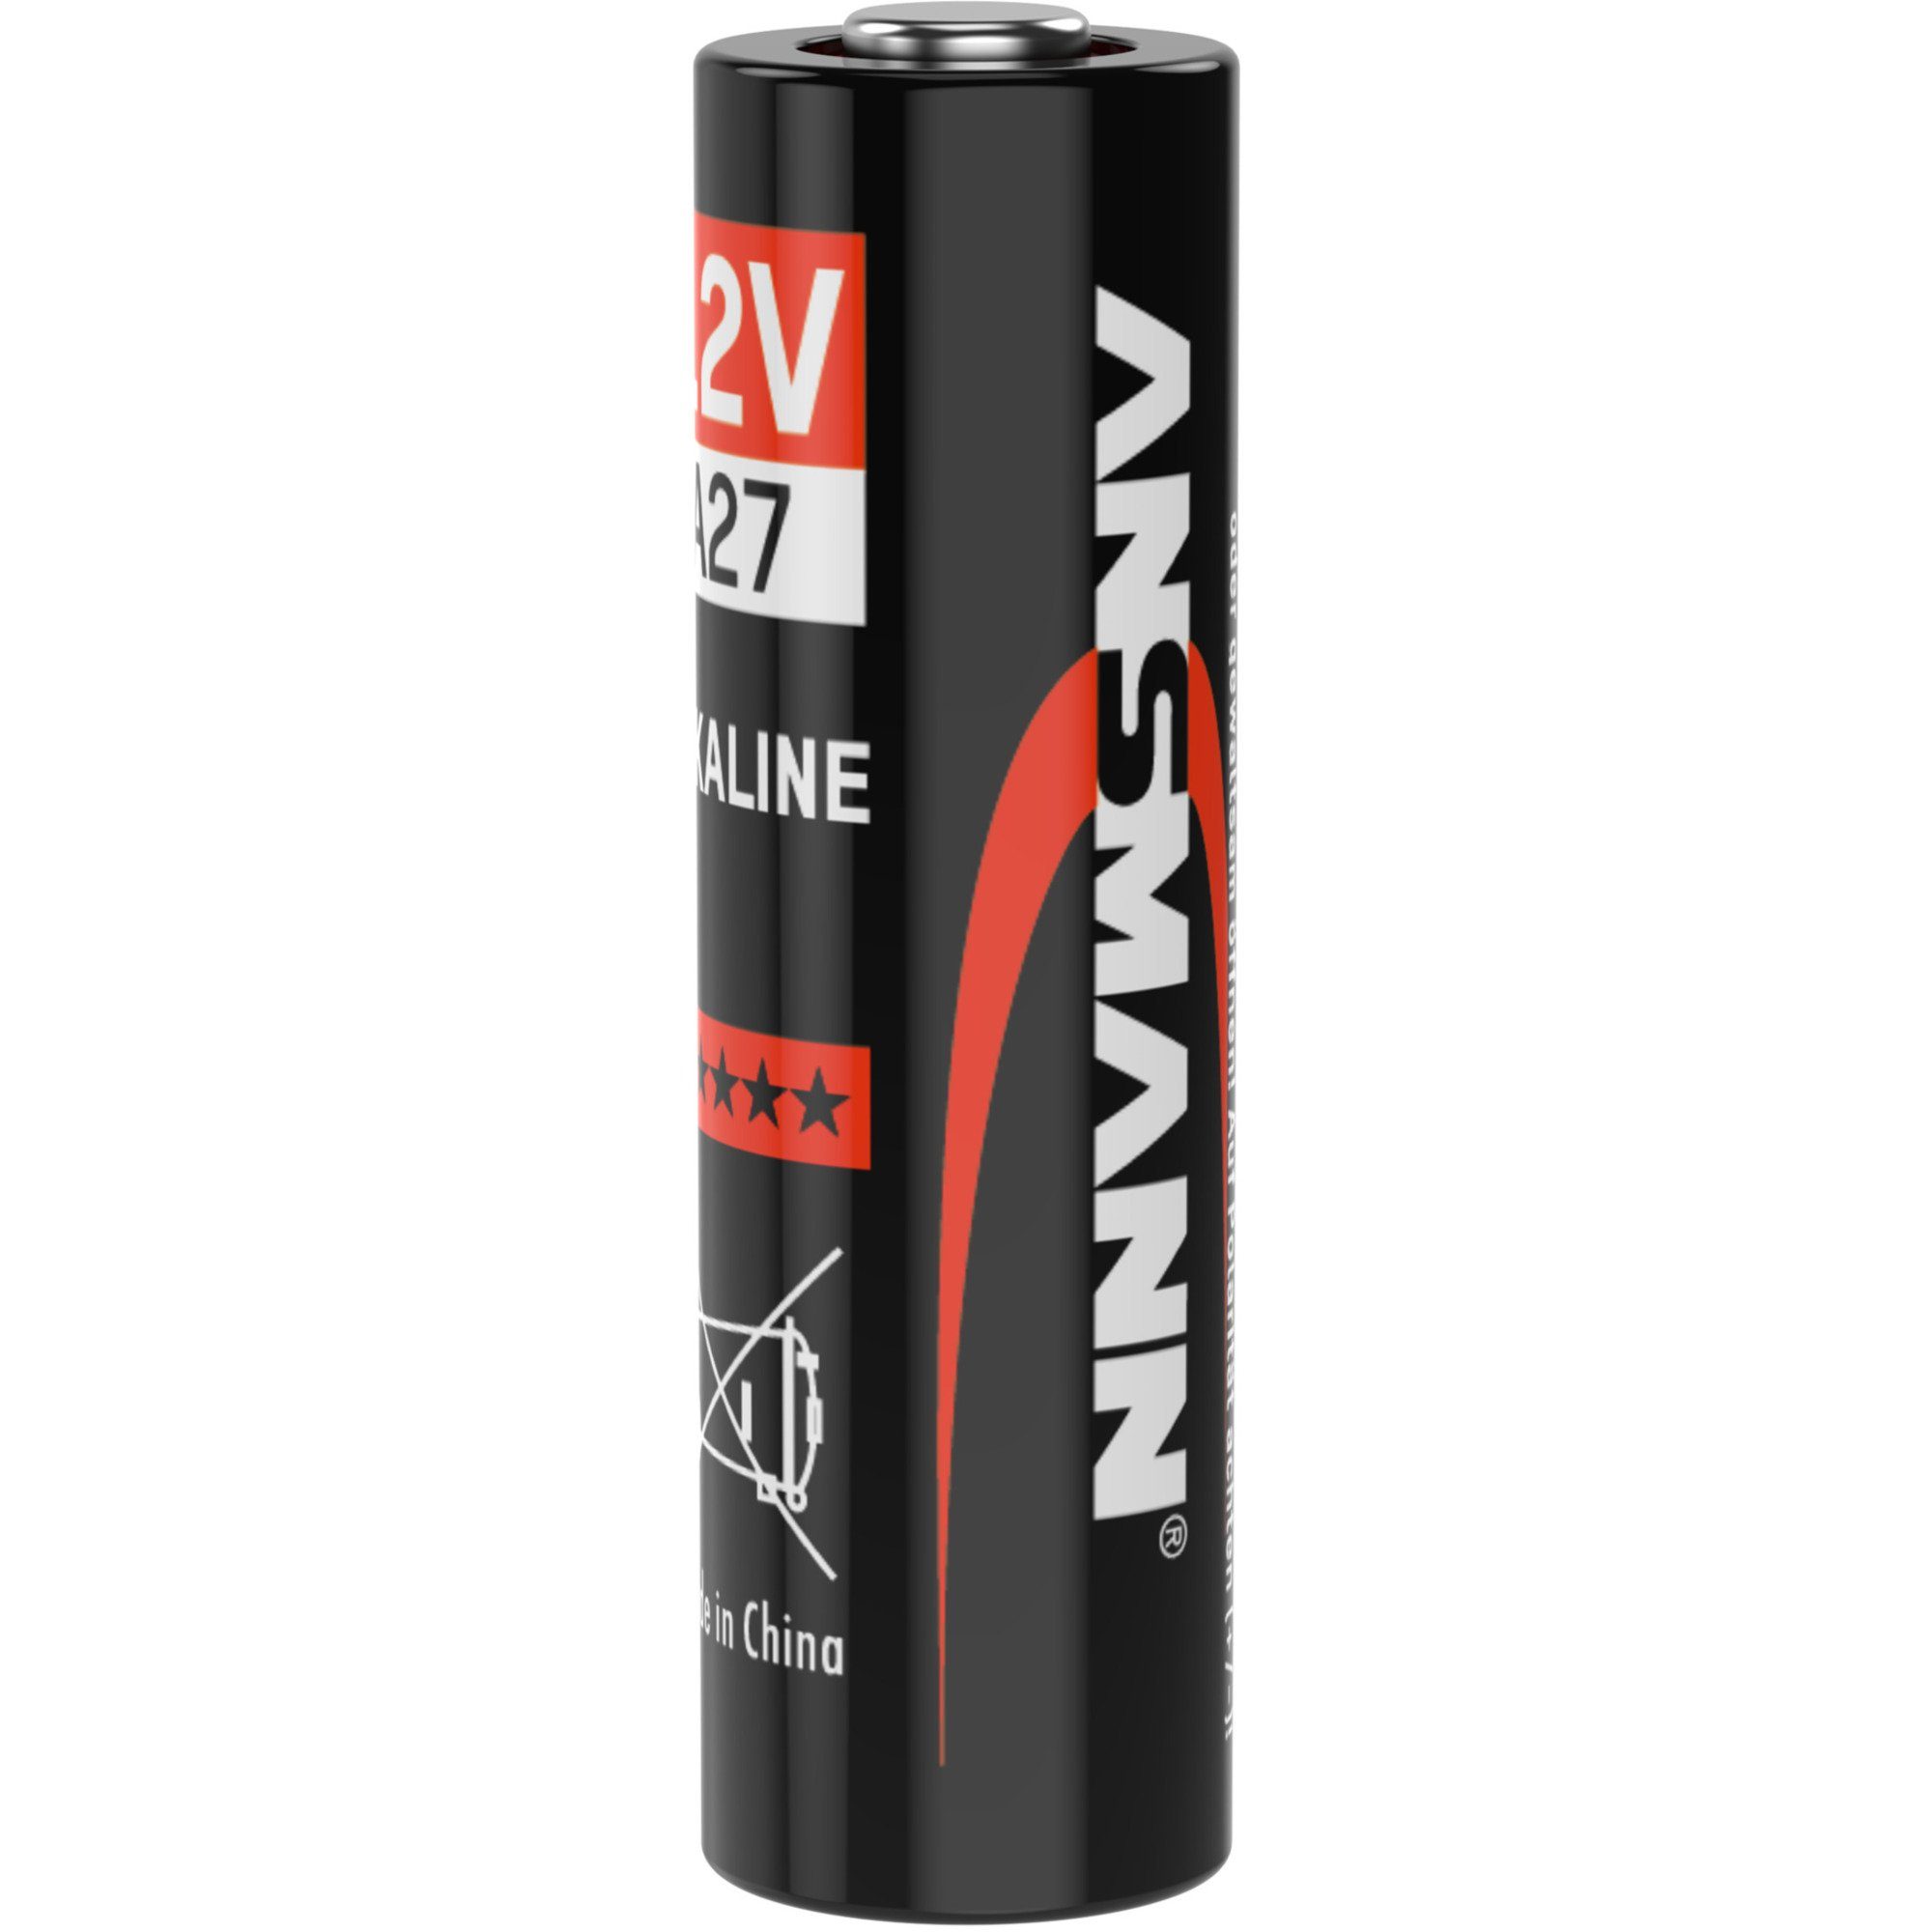 ANSMANN® Ansmann A27, Batterie Batterie